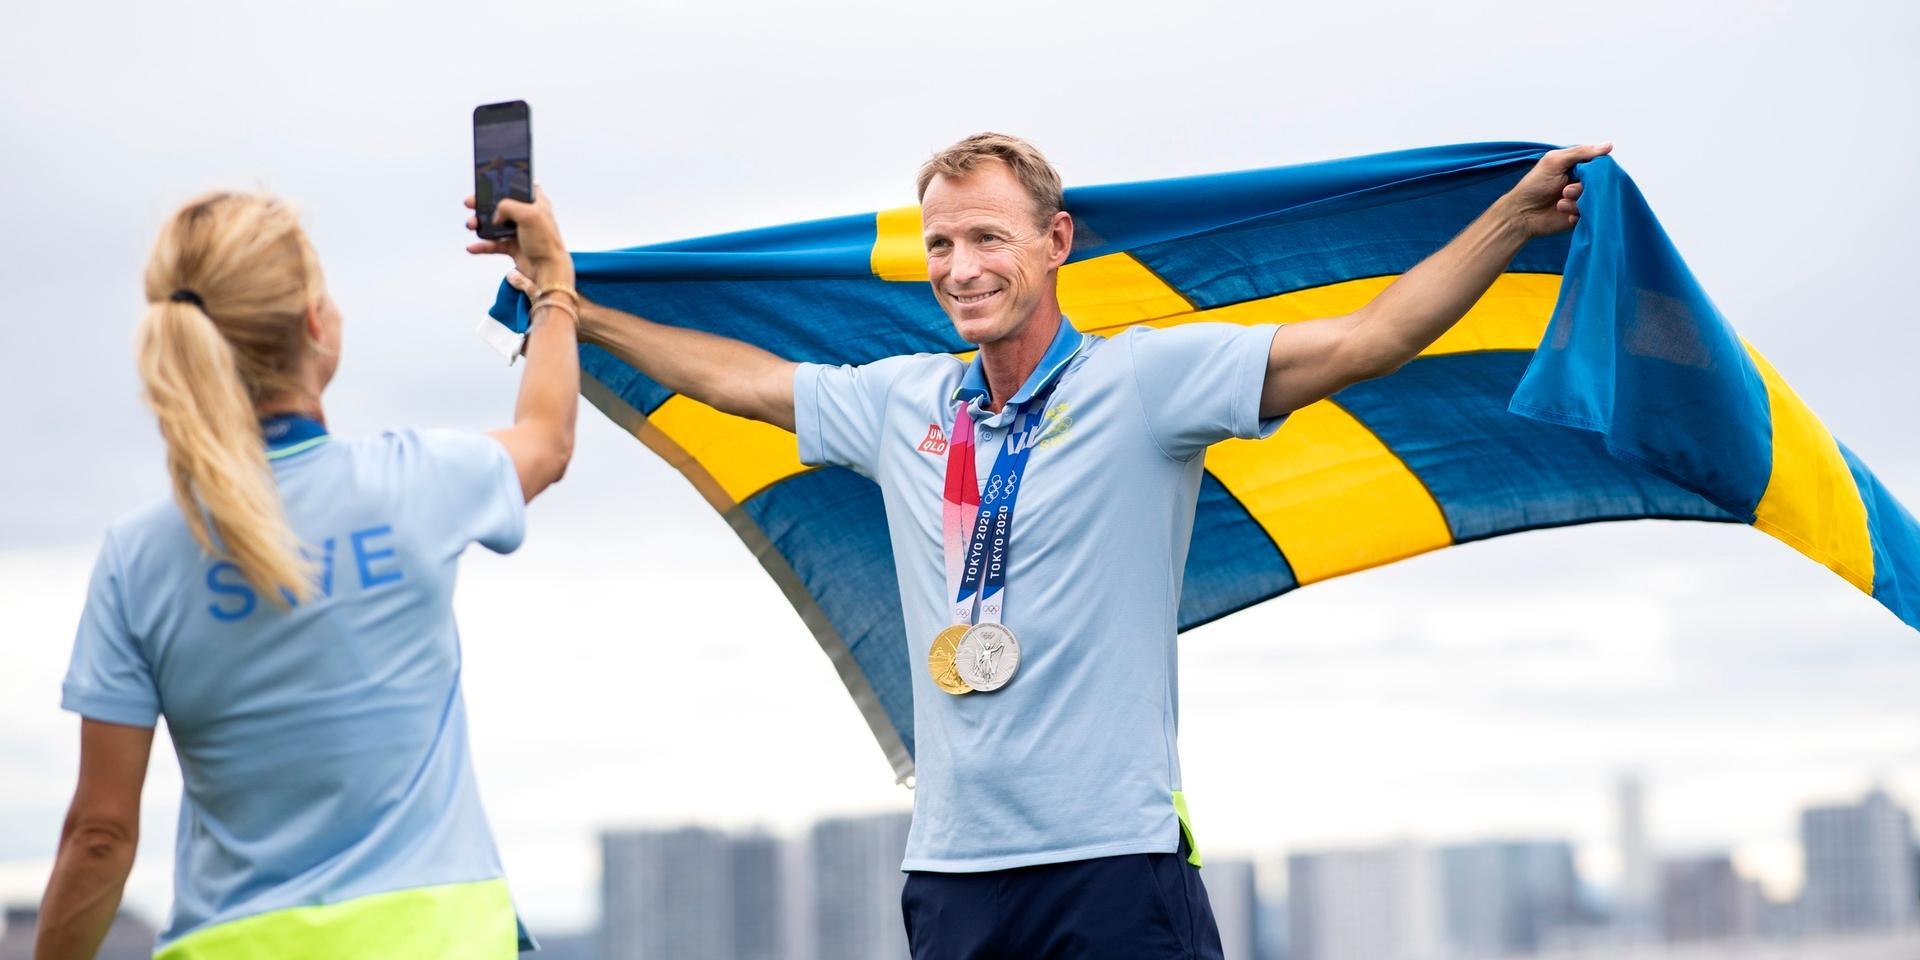 Malin Baryard Johnsson tar en bild på lagkamraten Peder Fredricson och hans två OS-medaljer.